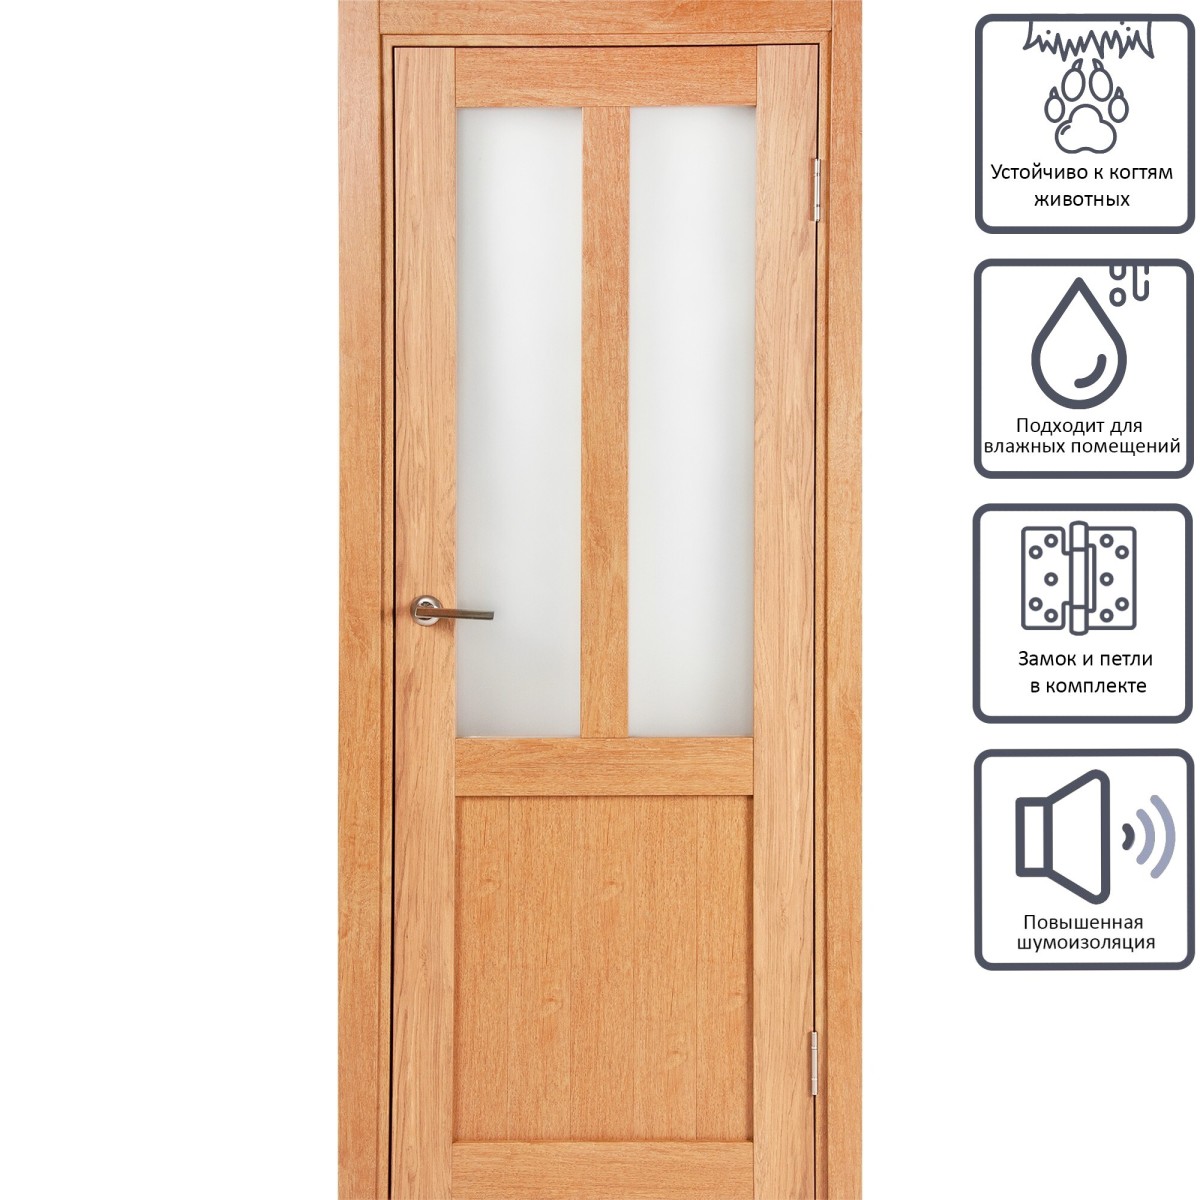 Дверь межкомнатная остеклённая Кантри 70x200 см, ПВХ, цвет дуб арагон, с фурнитурой